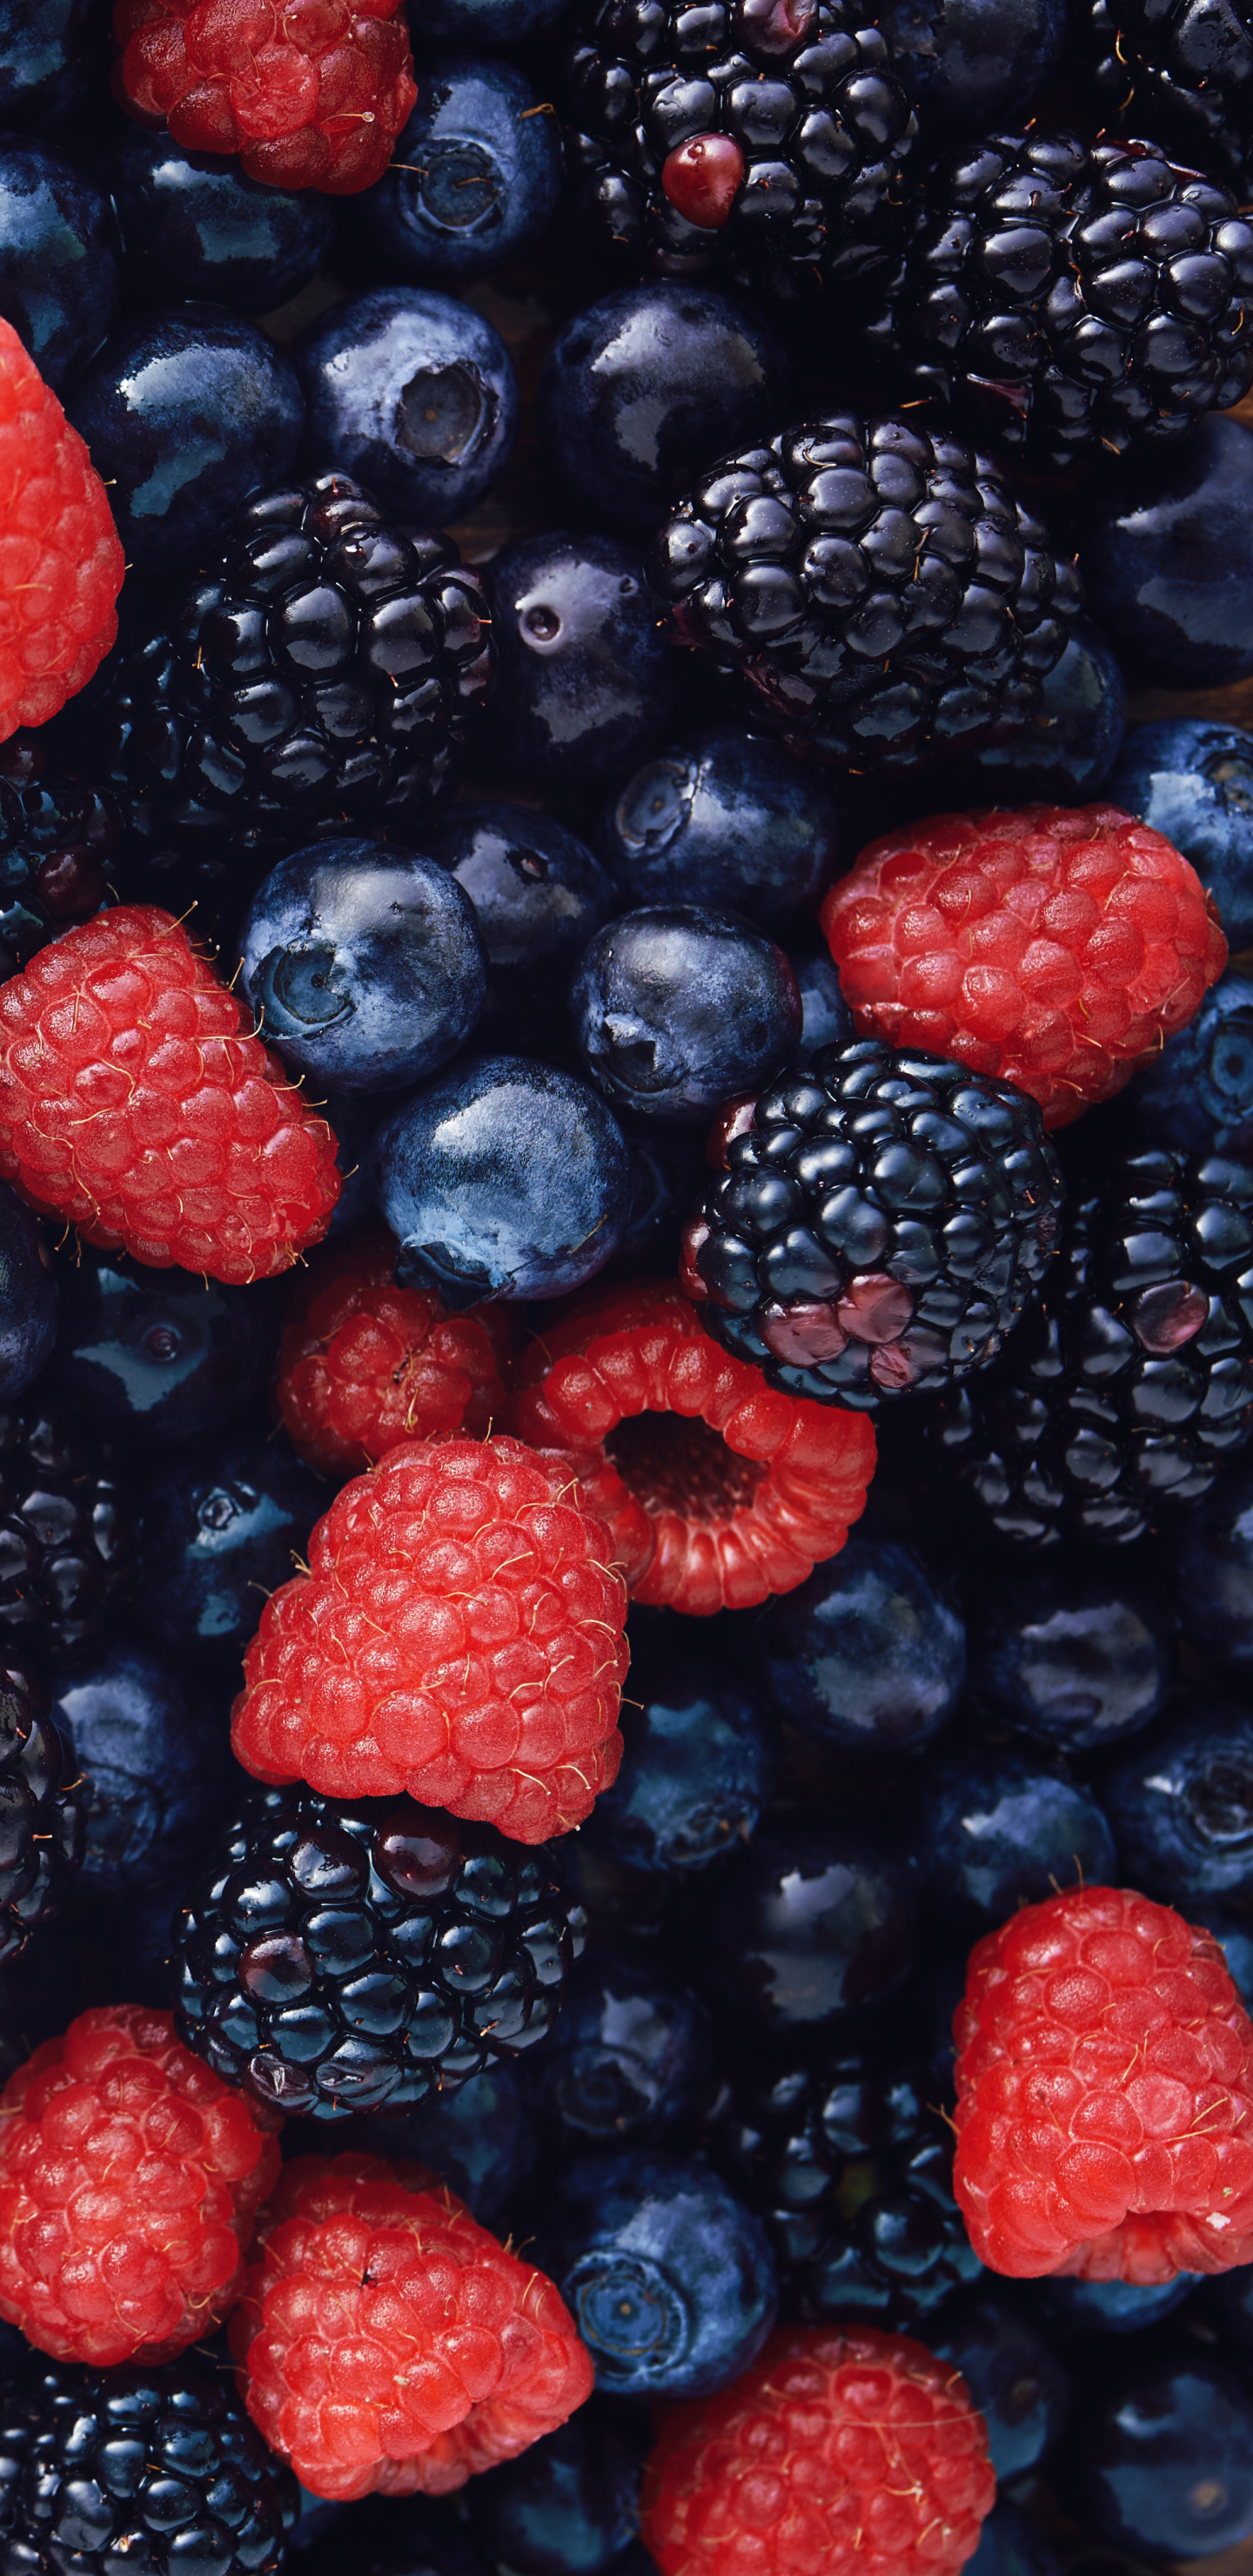 1323116 免費下載壁紙 食物, 浆果, 蓝莓, 覆盆子, 树莓, 水果, 黑莓 屏保和圖片